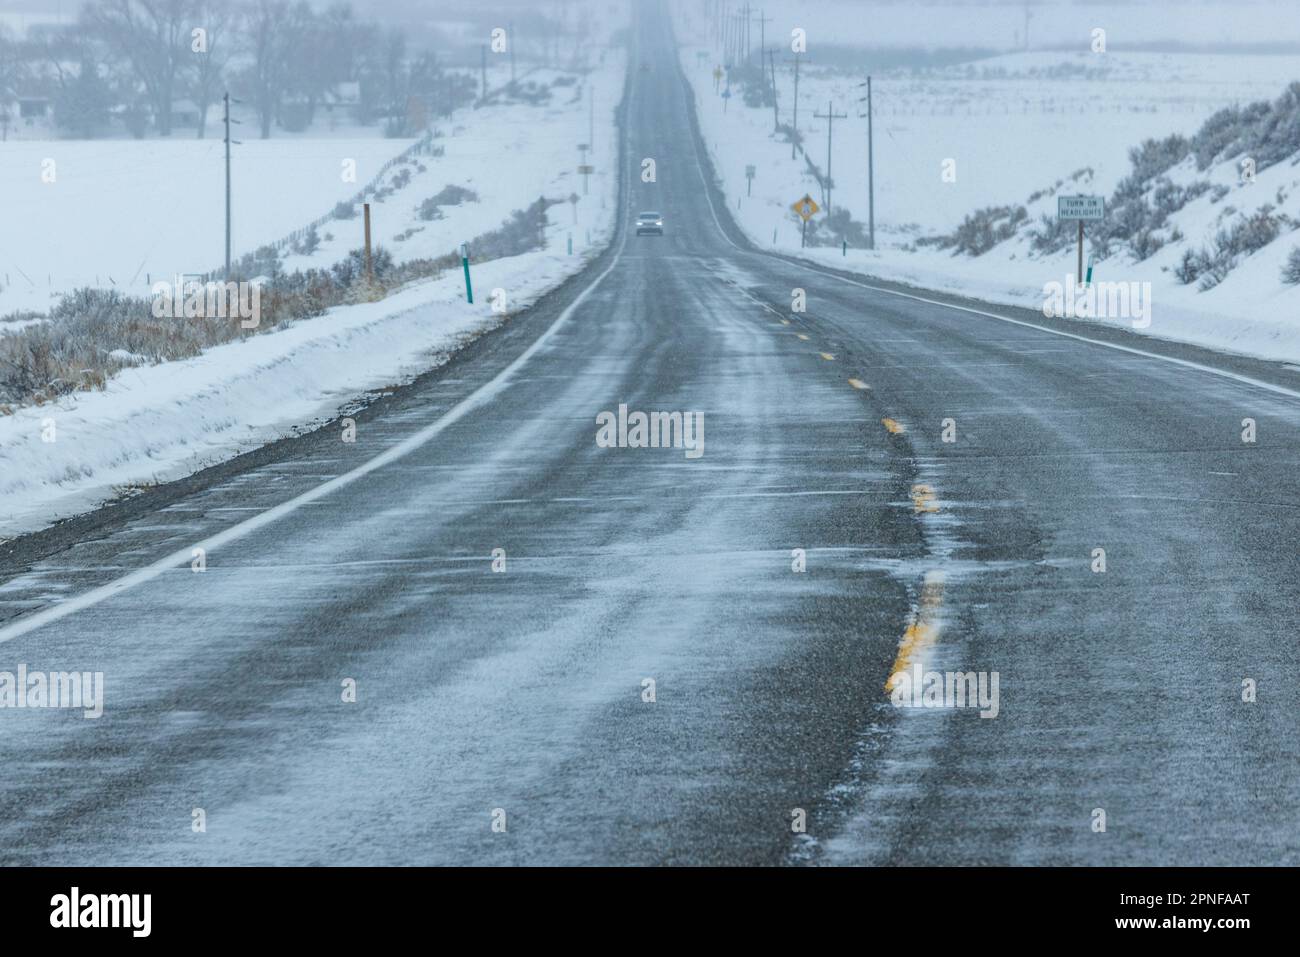 États-Unis, Idaho, Bellevue, voiture sur la Highway 75 en hiver Banque D'Images